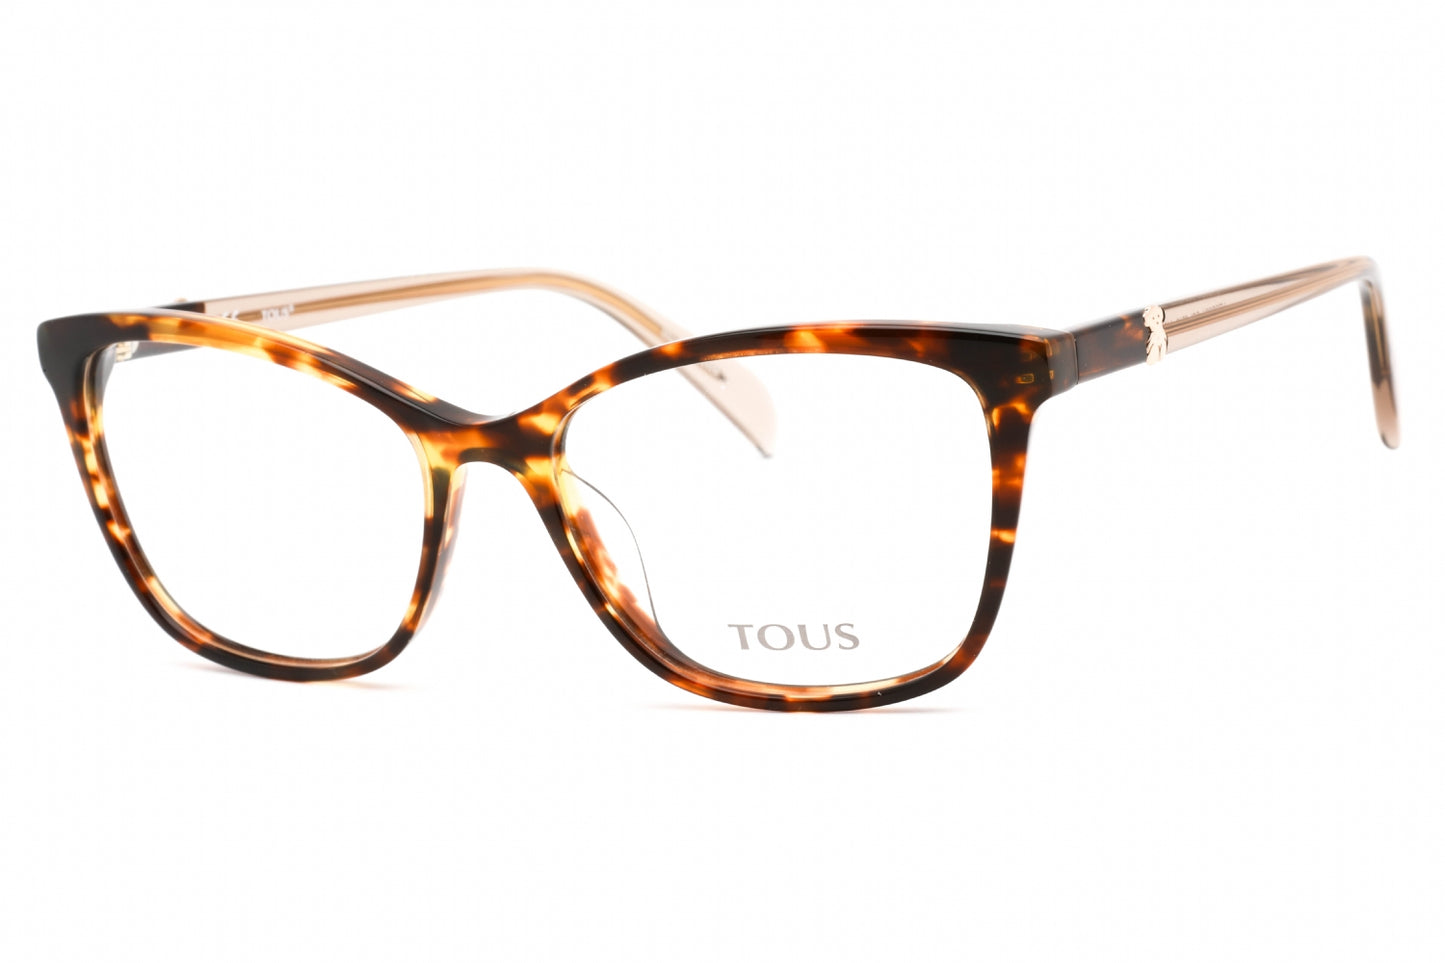 Tous VTOB36V-0743 52mm New Eyeglasses